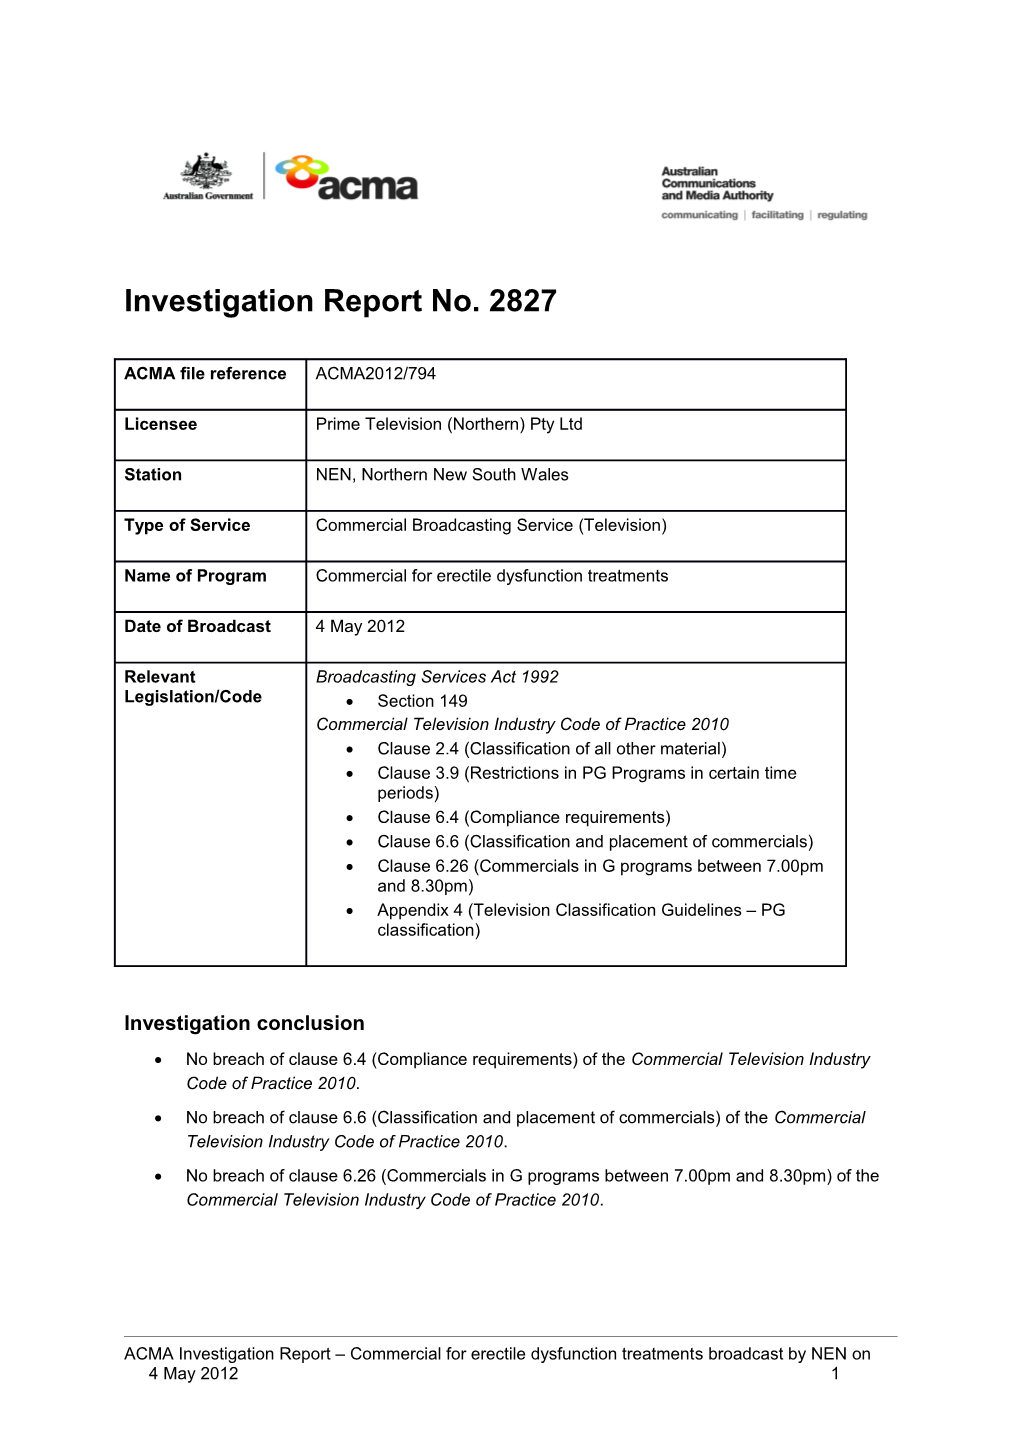 NEN (Prime TV NSW) - ACMA Investigation Report 2827